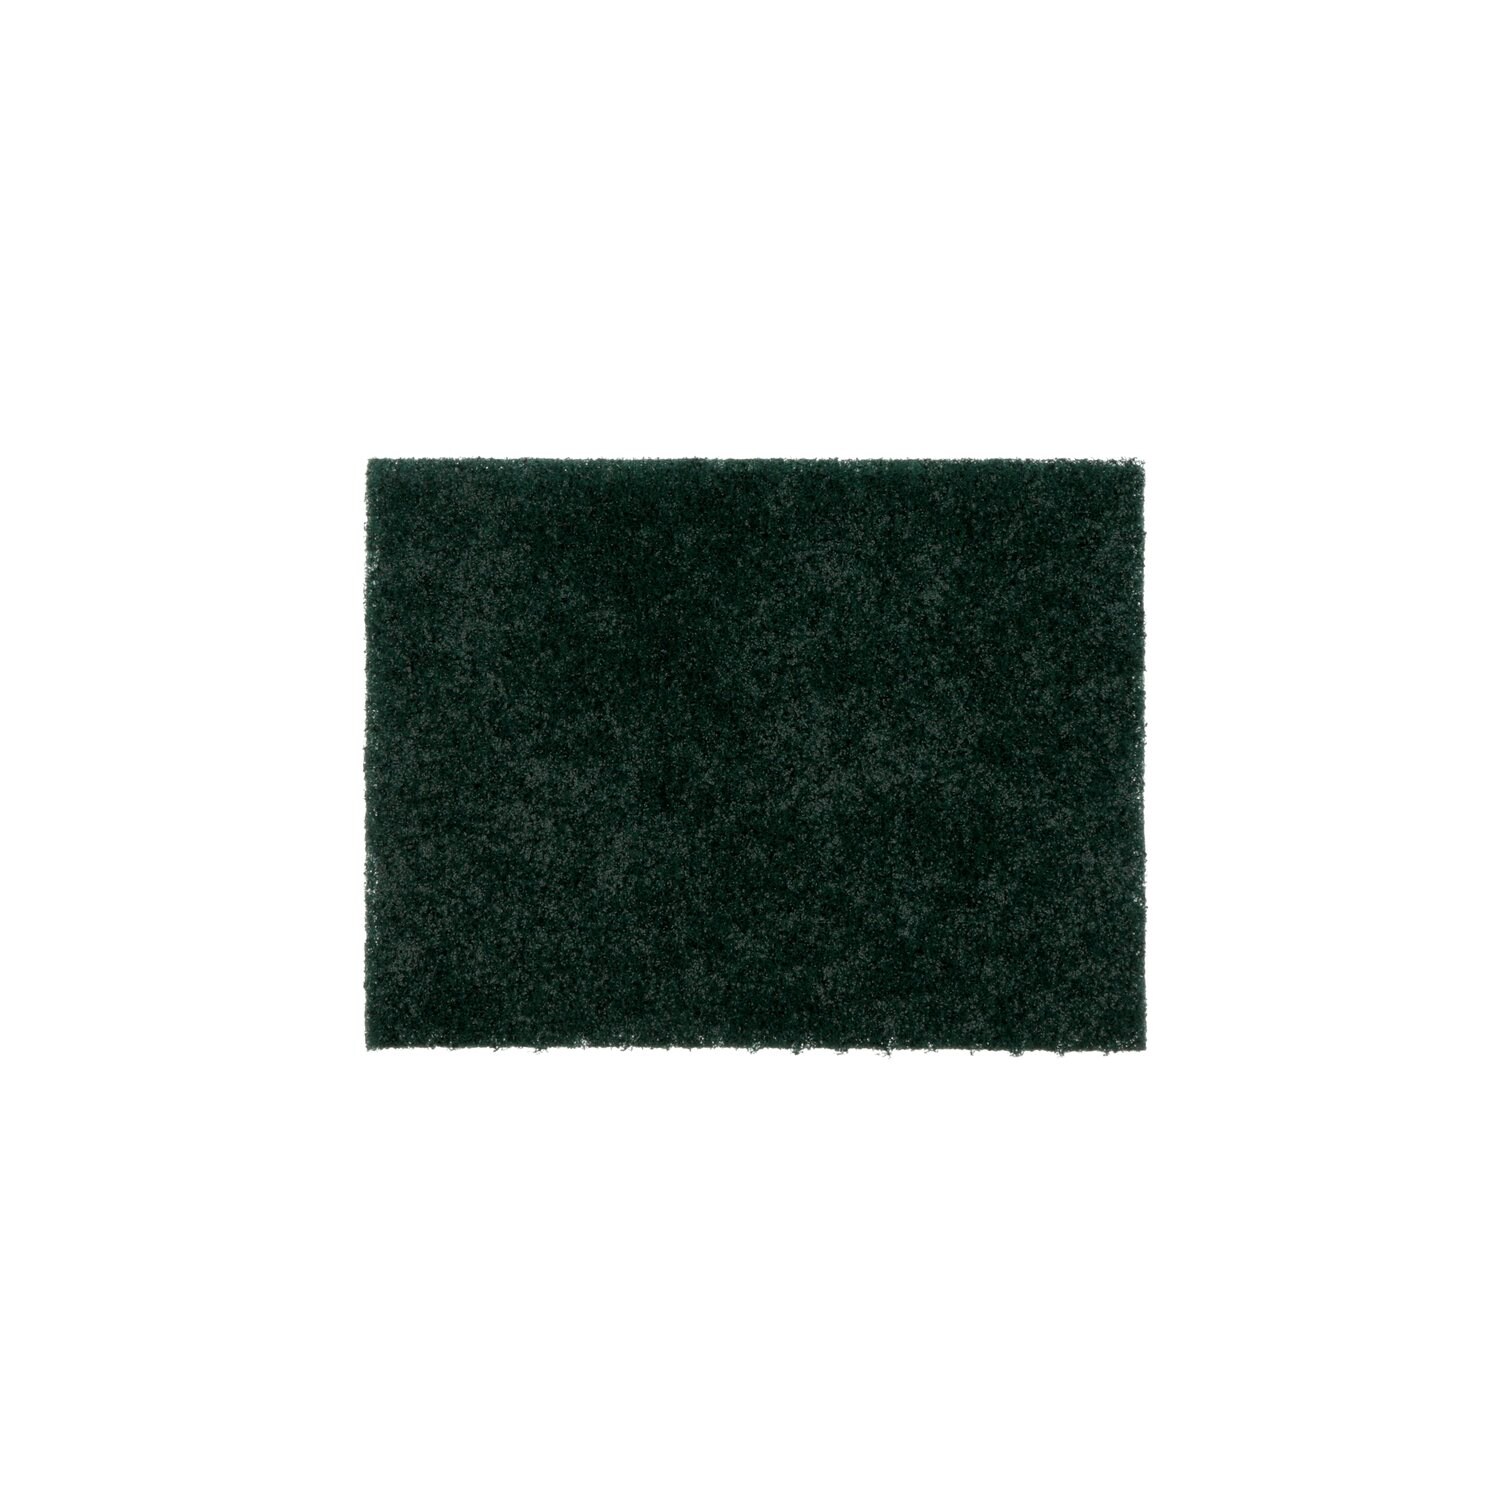 7010028971 - Scotch-Brite General Purpose Scouring Pad 105BP, 4.5 in x 6 in, 40/Box,
3 Box/Case